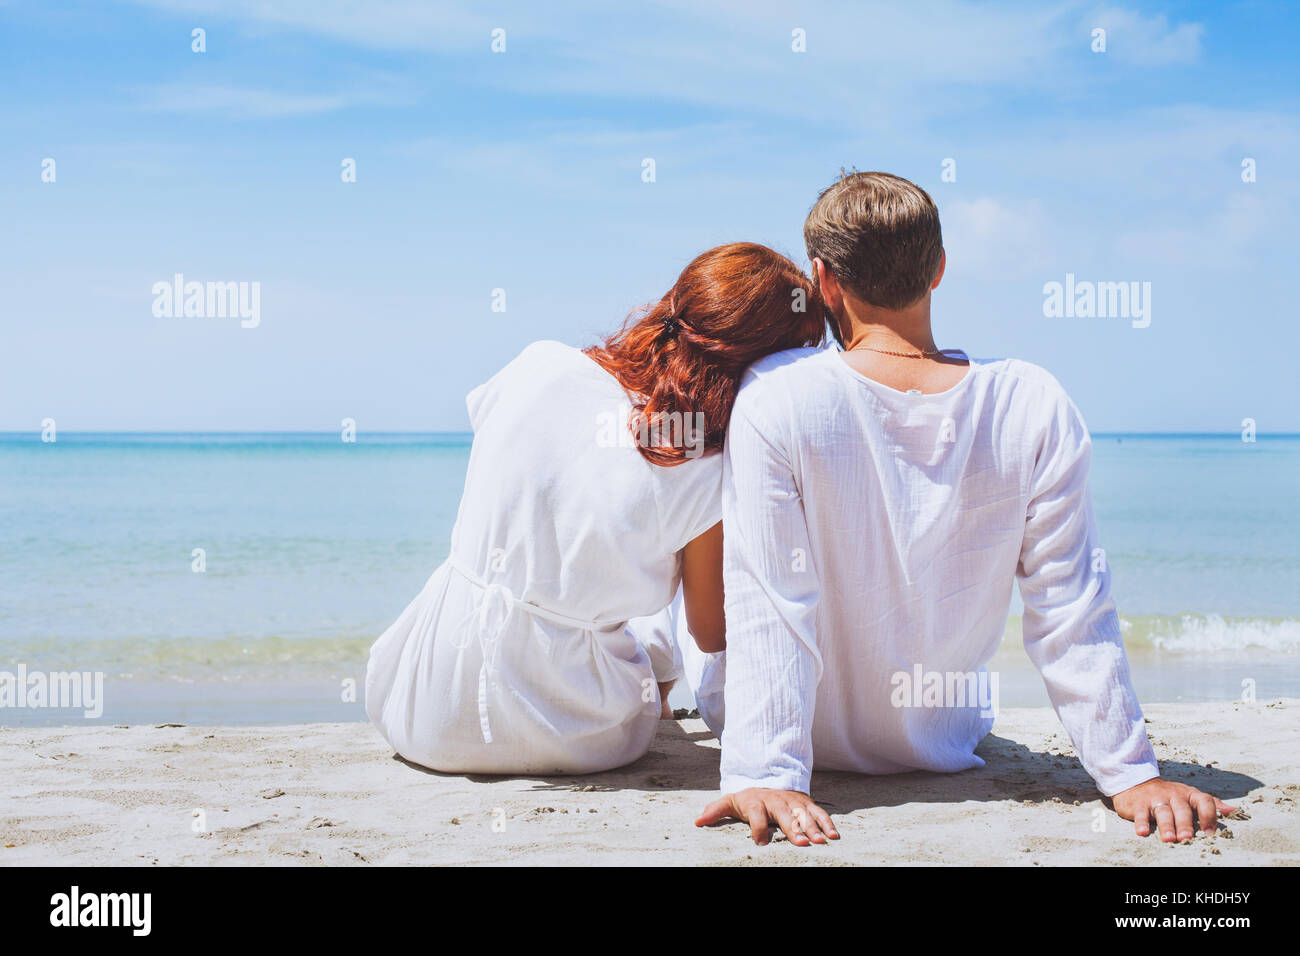 Glückliches Paar am Strand, Sommerurlaub oder Flitterwochen Hintergrund Stockfoto